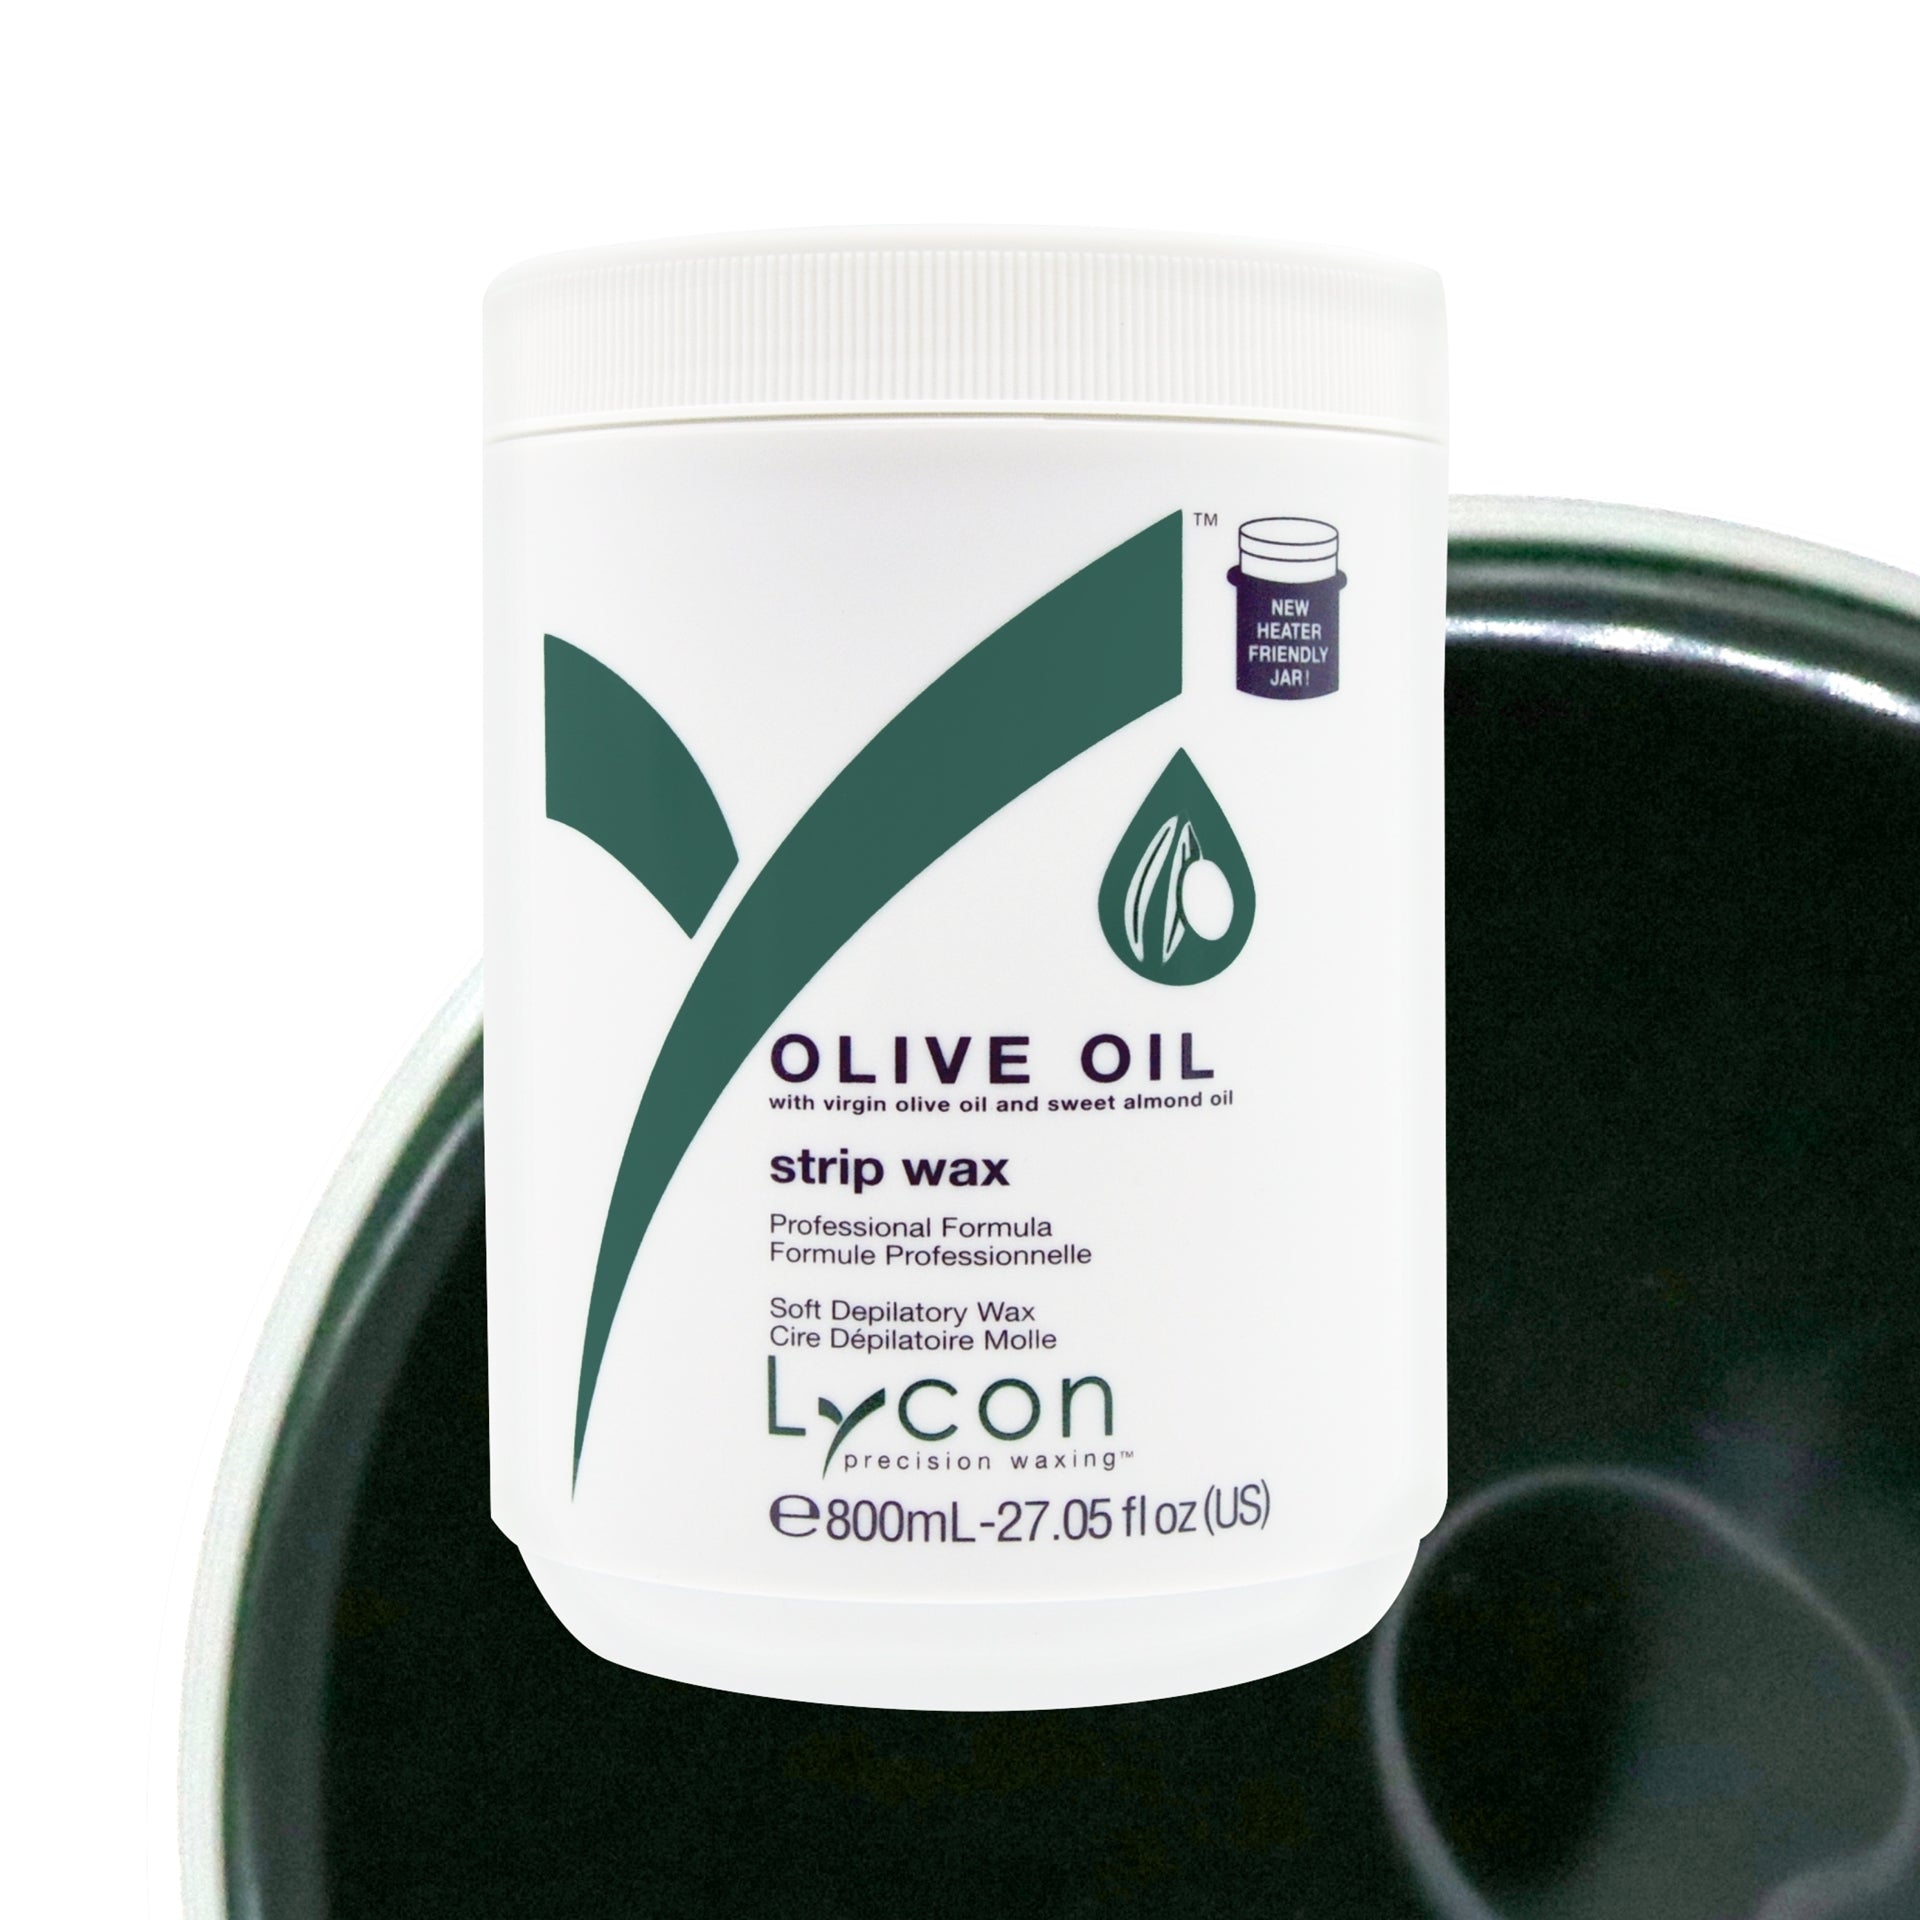 Olive Oil Strip Wax